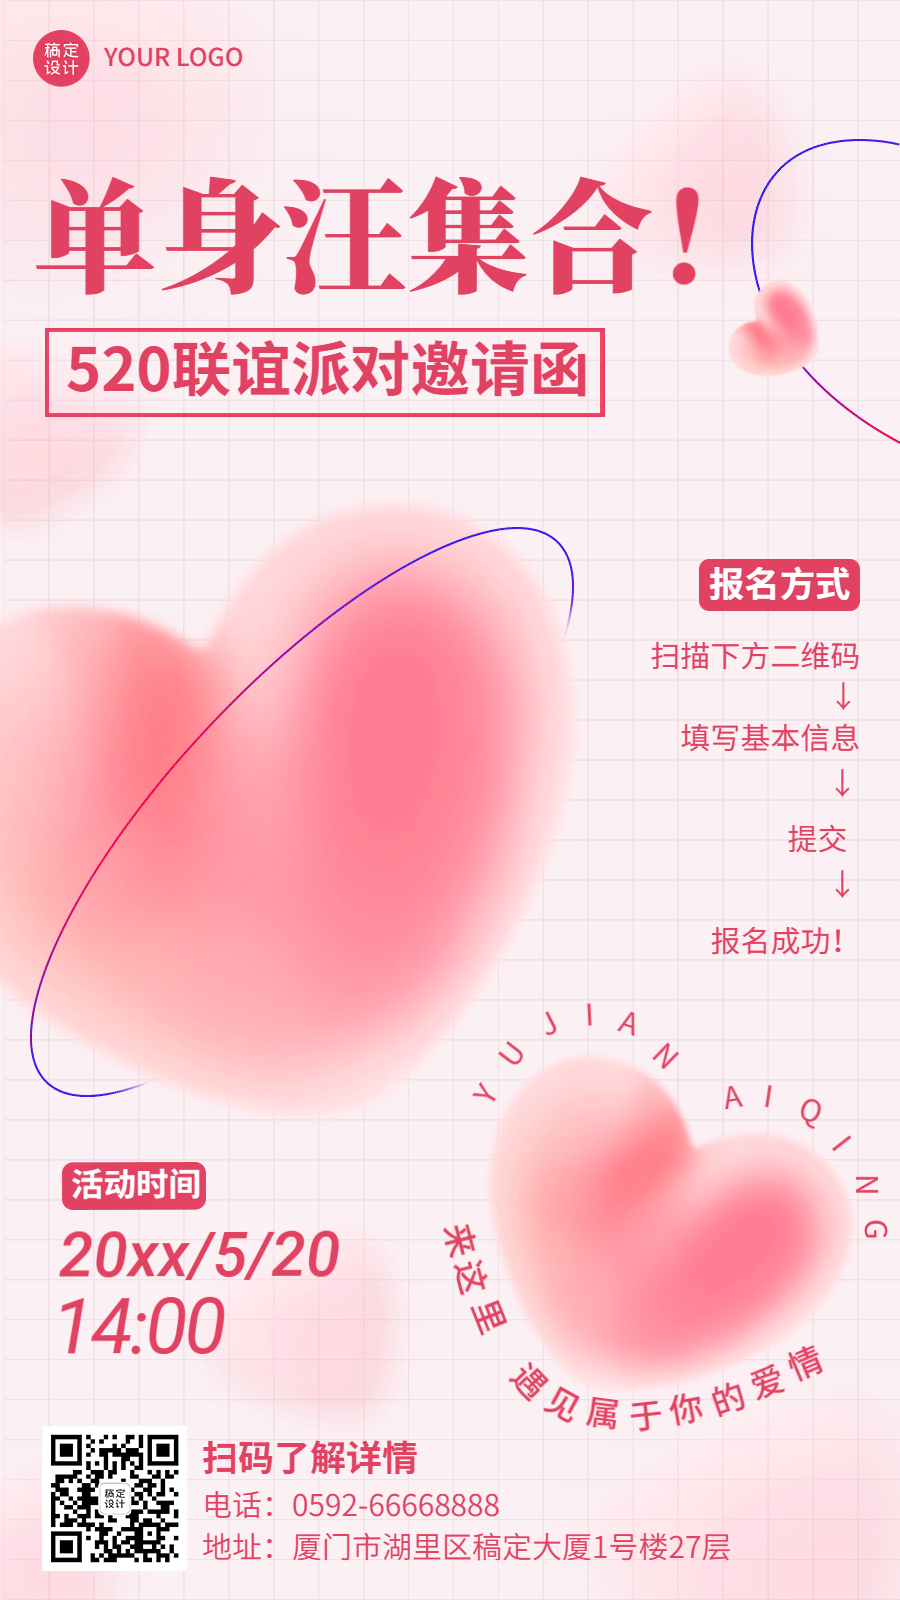 520情人节节日活动联谊邀请函排版动态海报